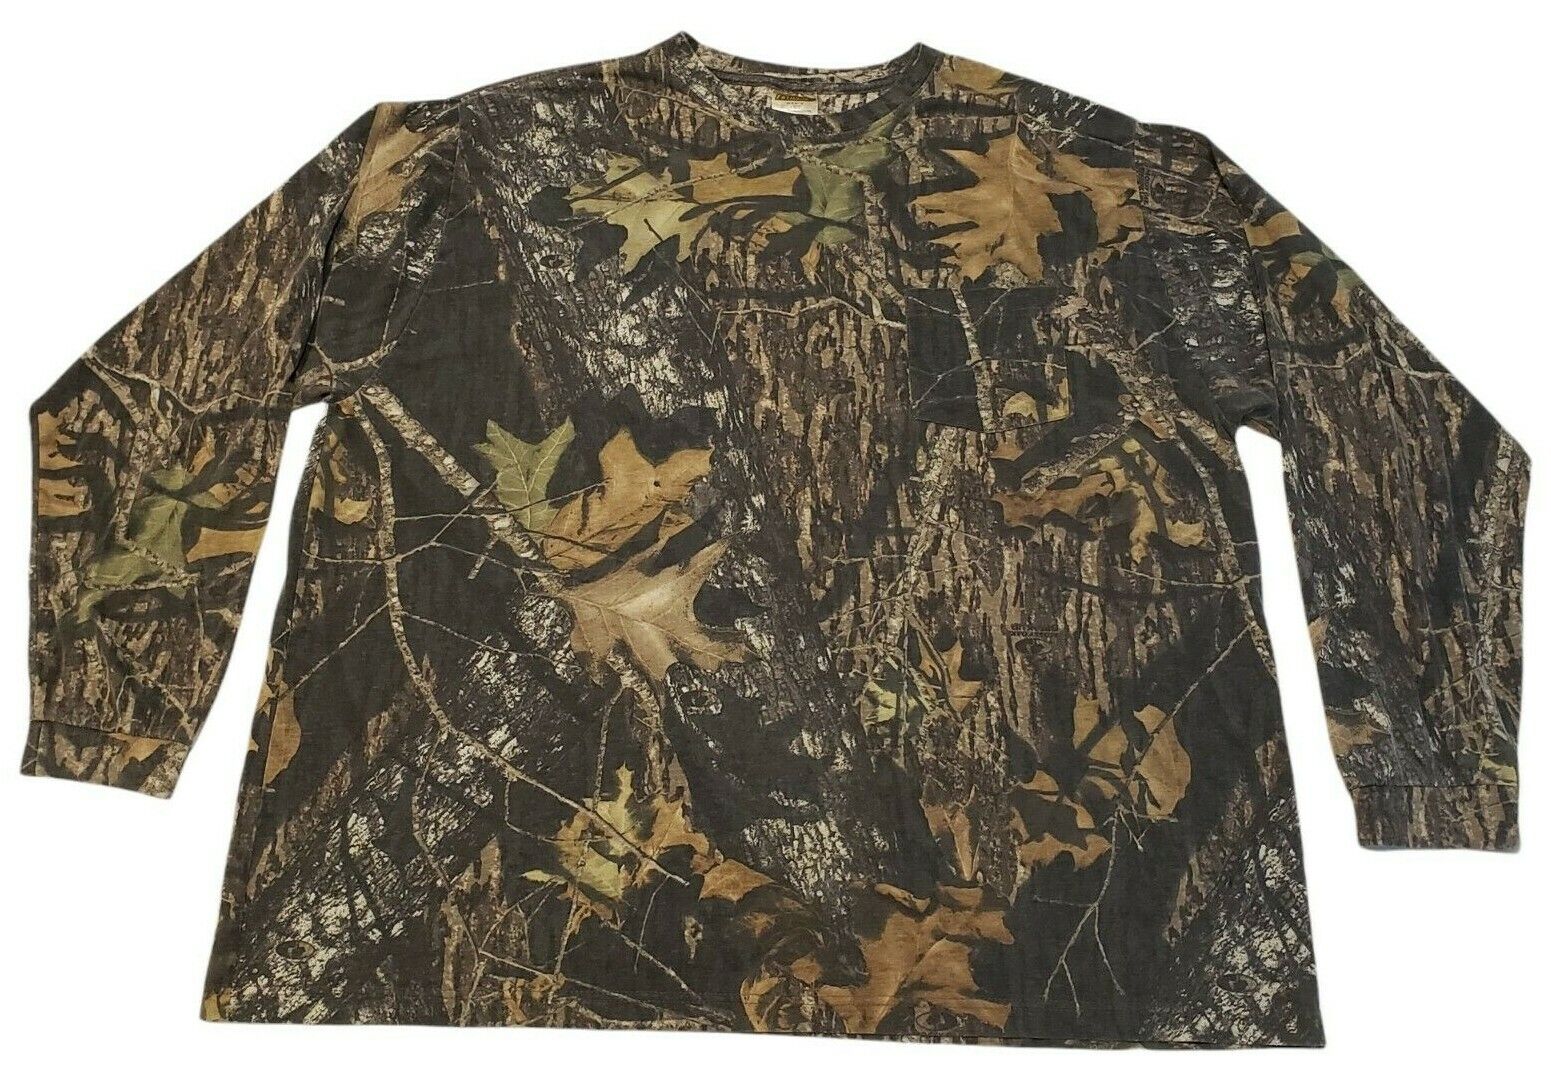 Field Staff Men's Mossy Oak Break Up Camo Long Sleeve Pocket T-Shirt Size 3XL